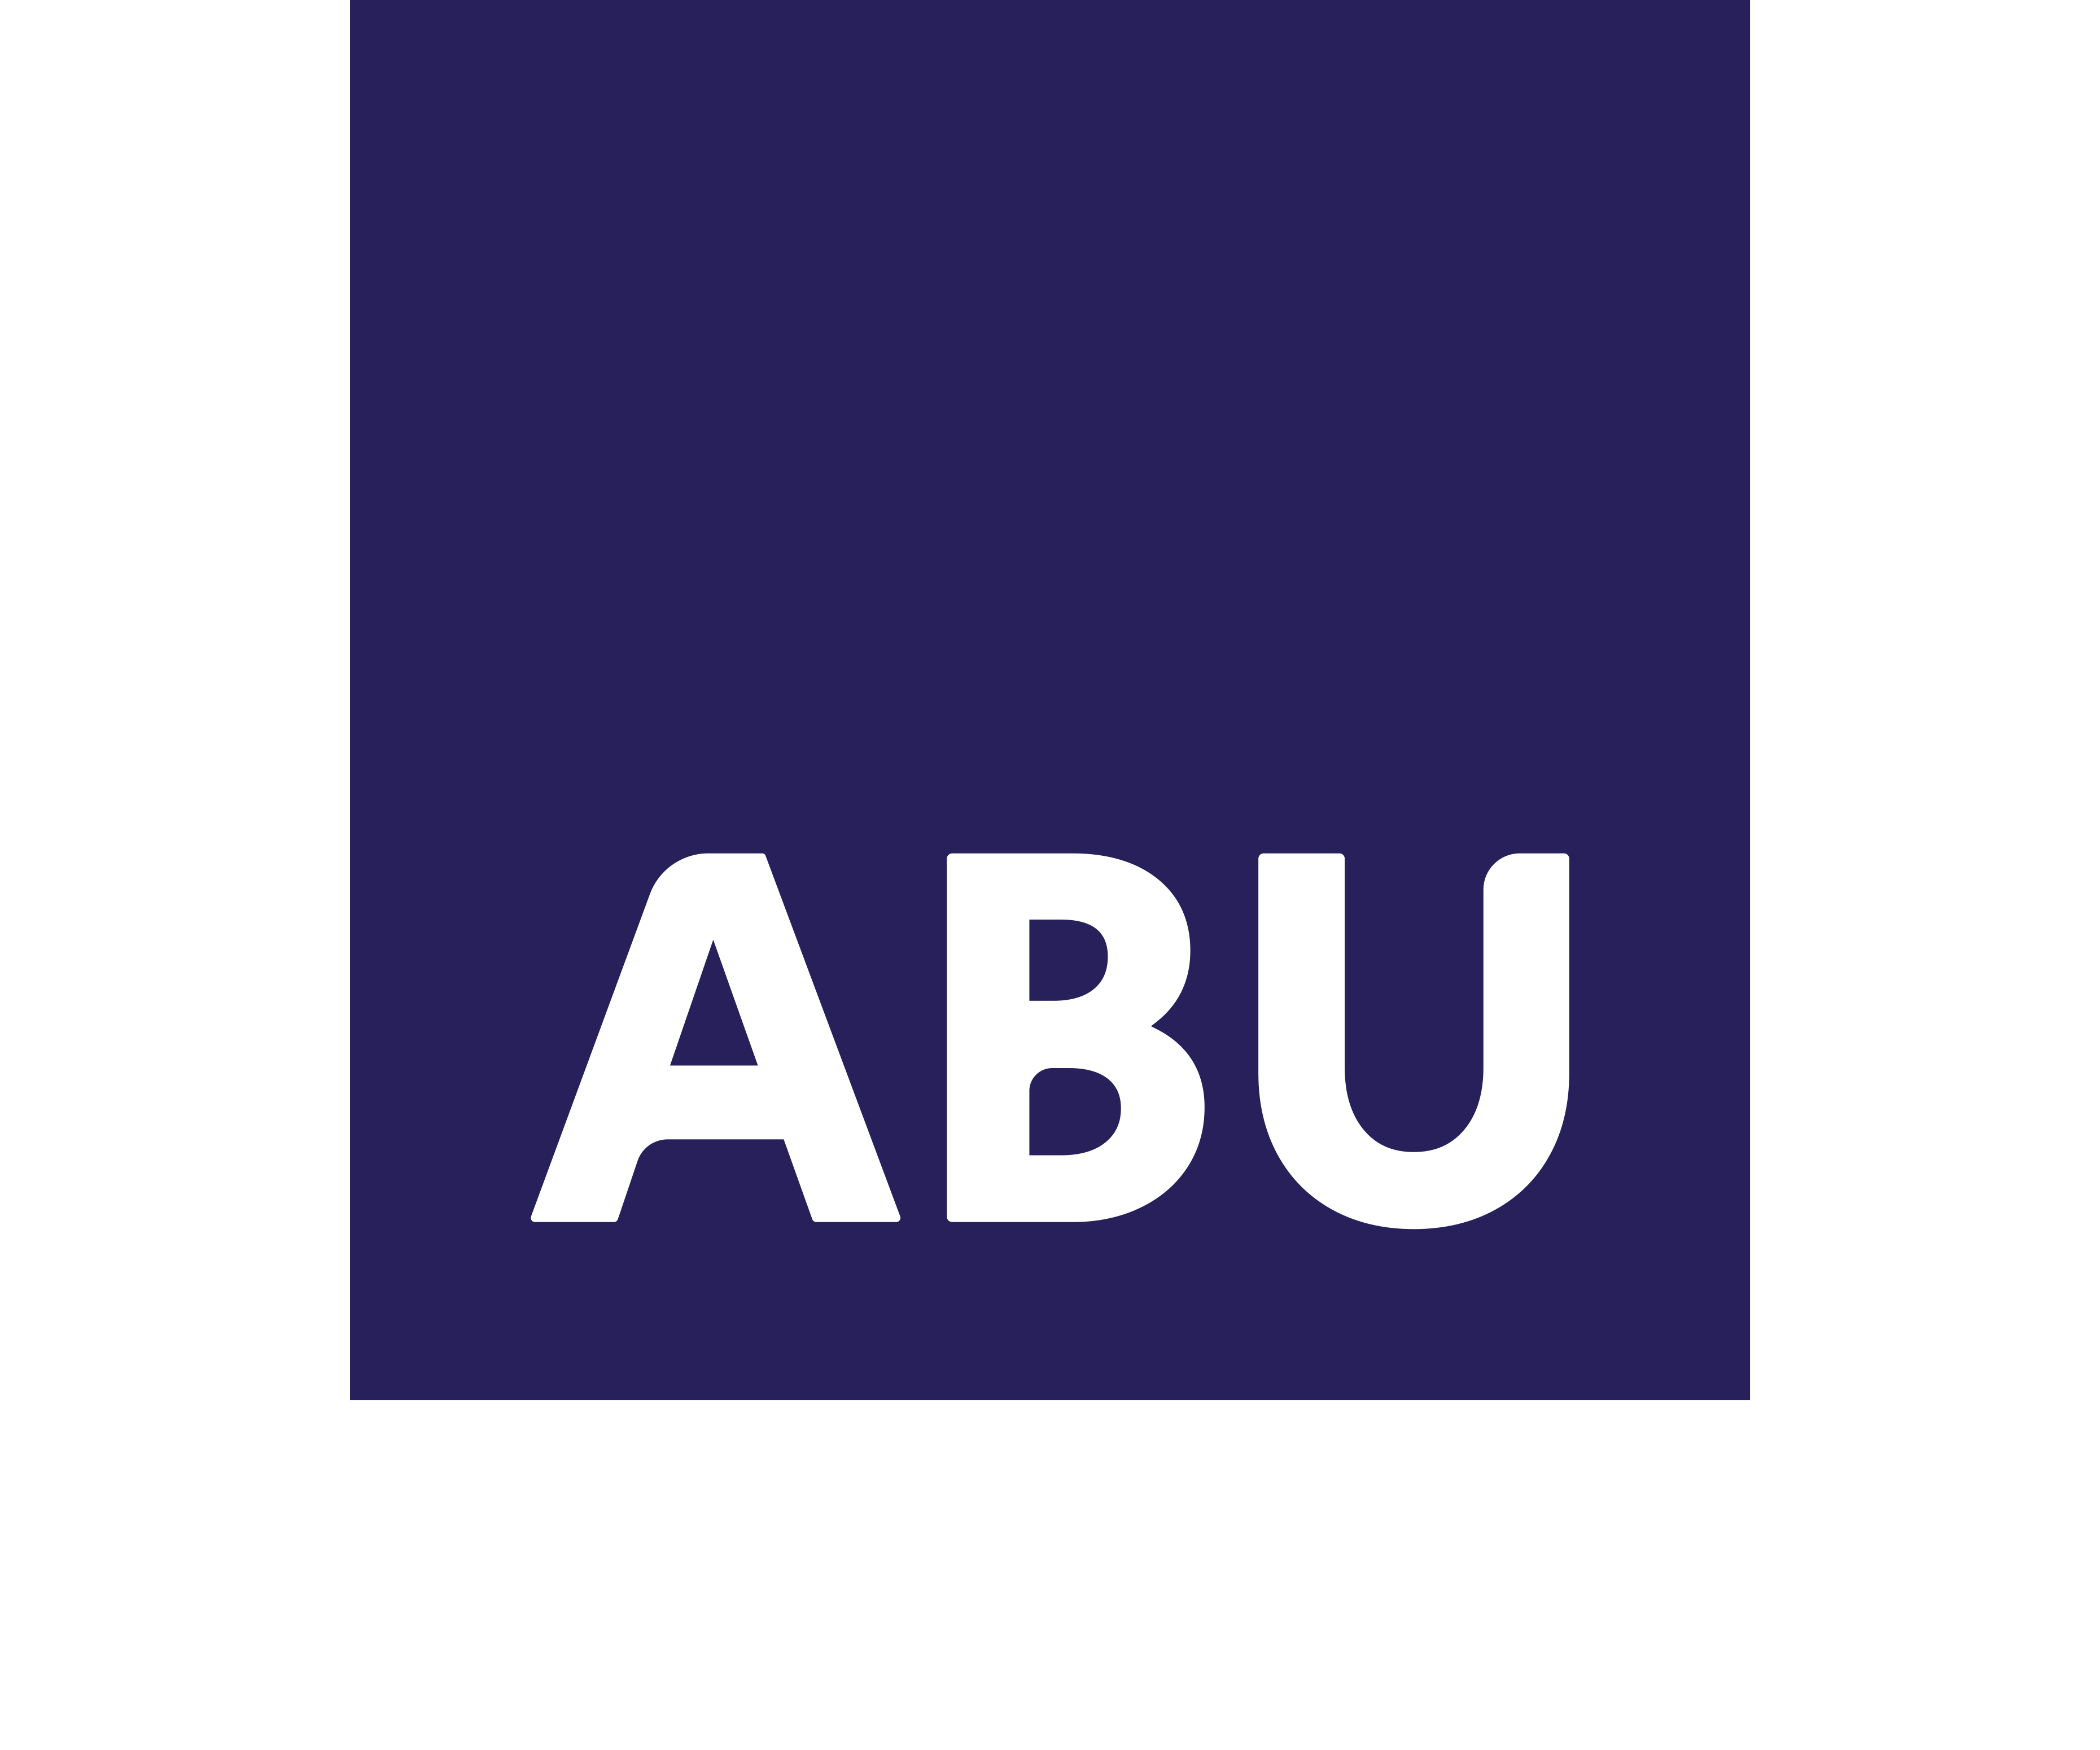 Logo ABU